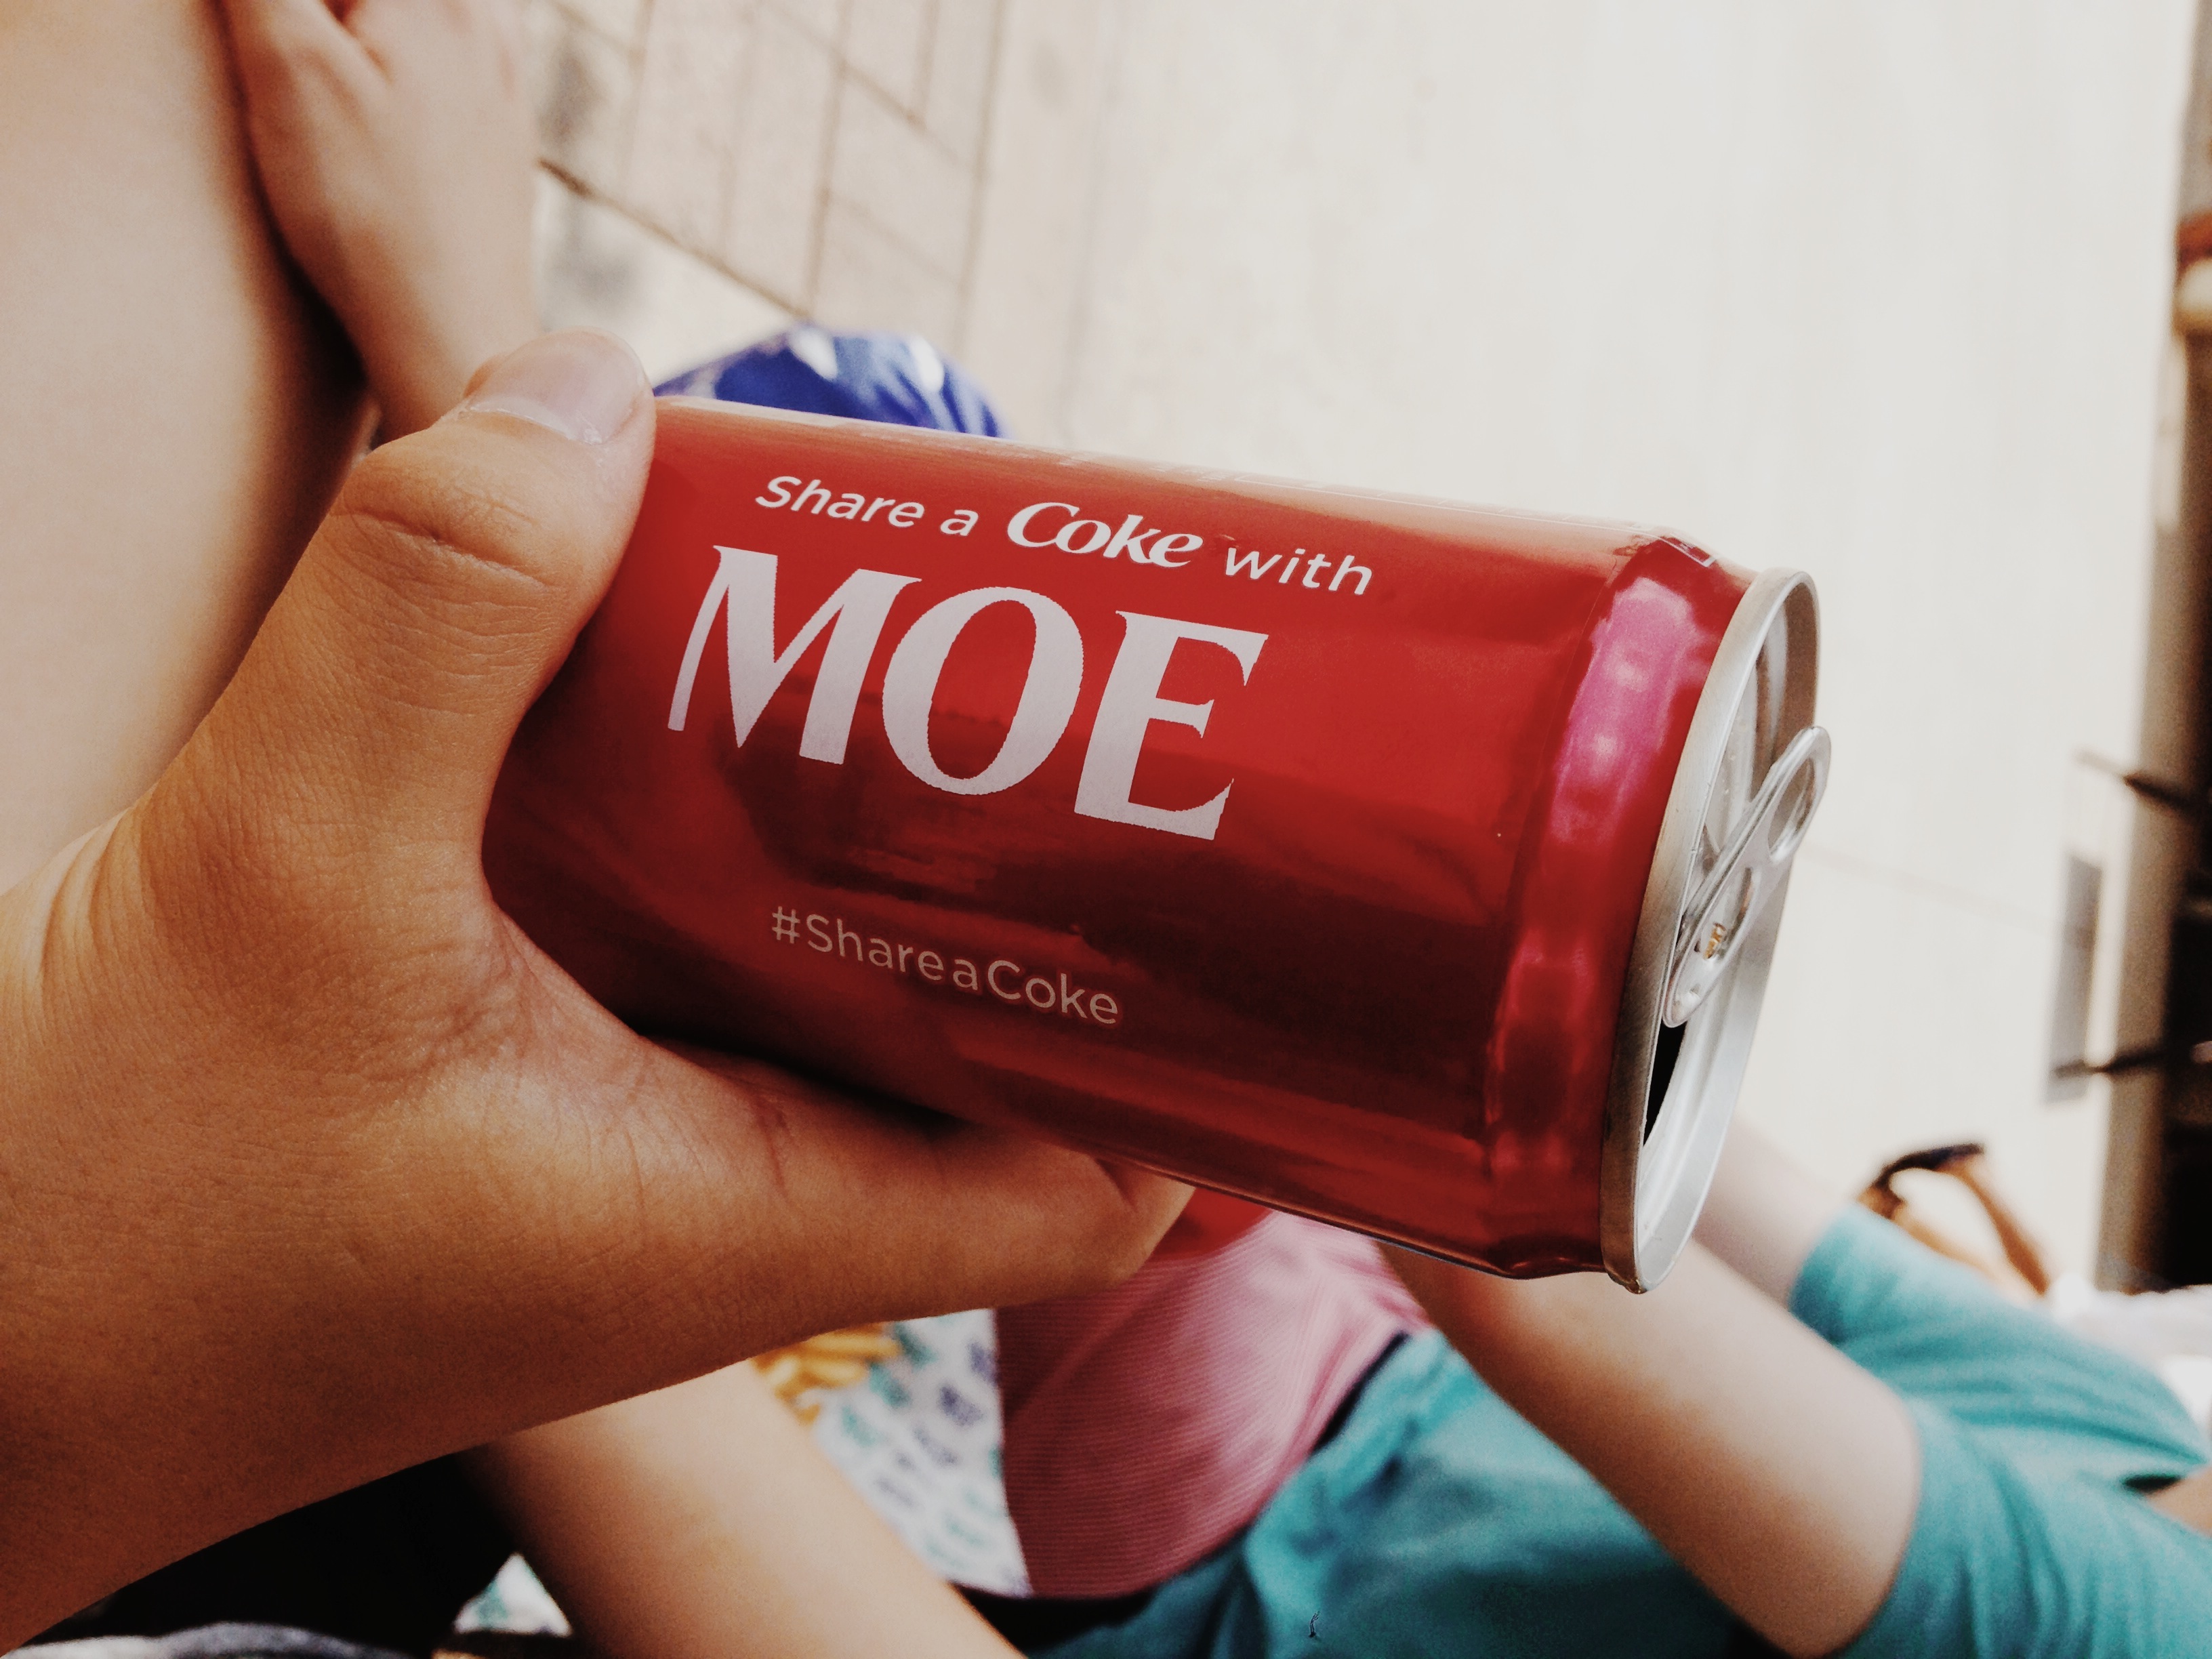 Share a Coke with MOE